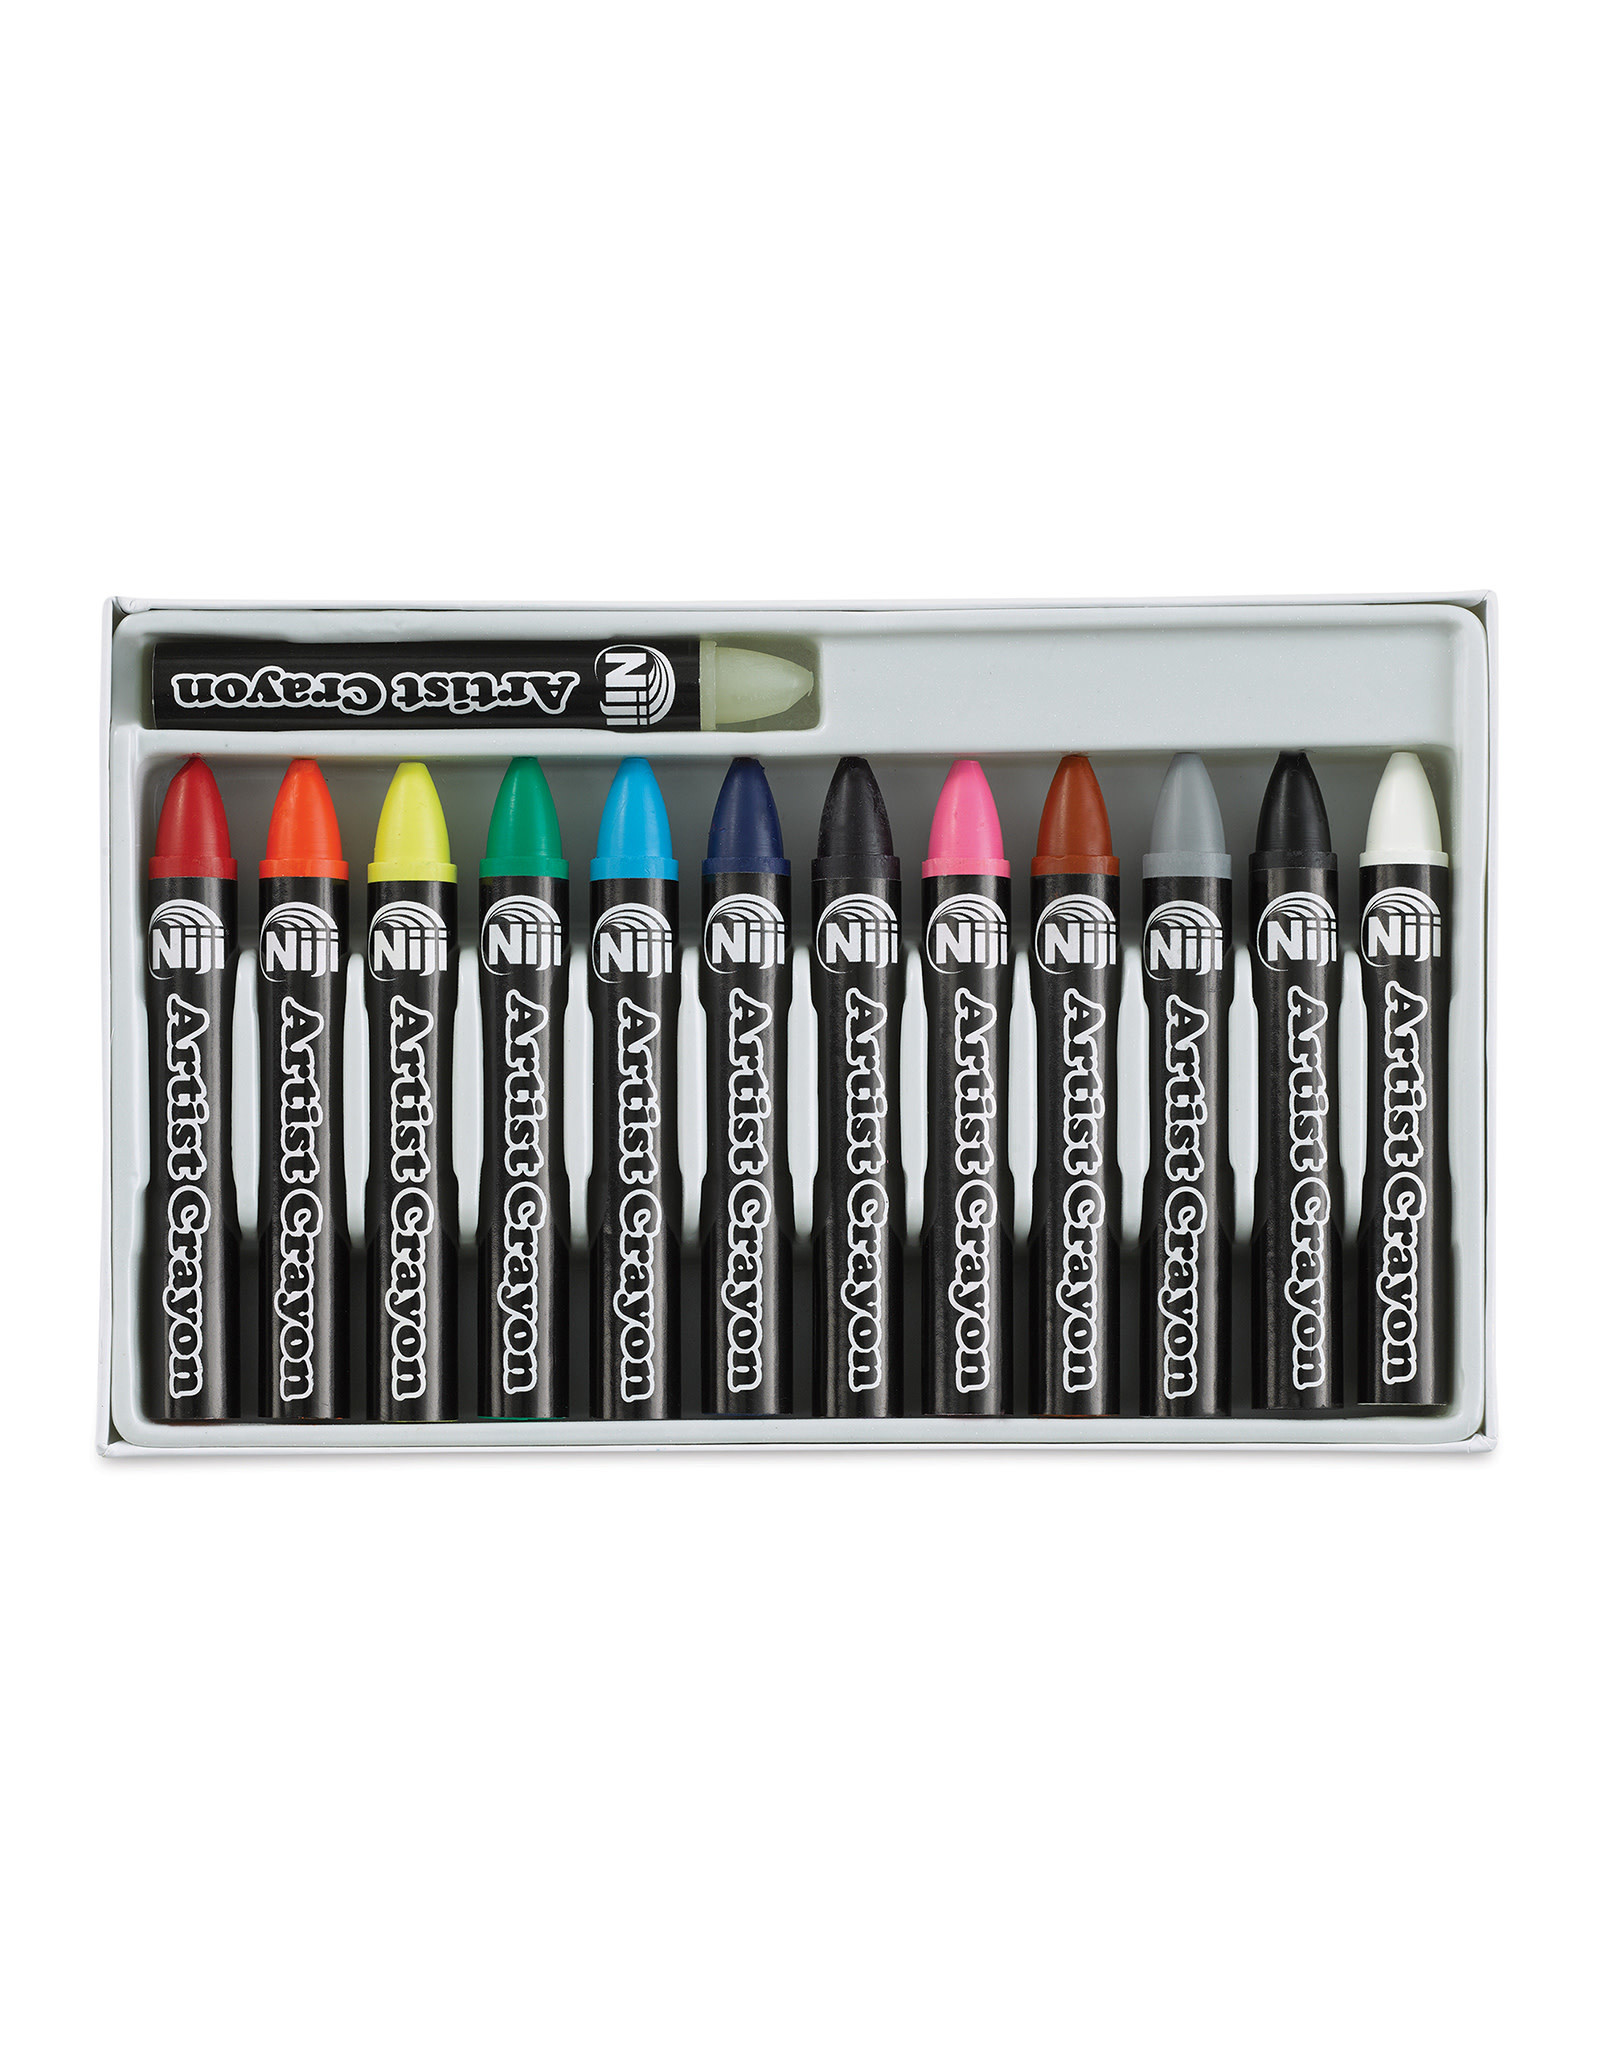 YASUTOMO Yasutomo Niji Wax Artist Crayons, Set of 12